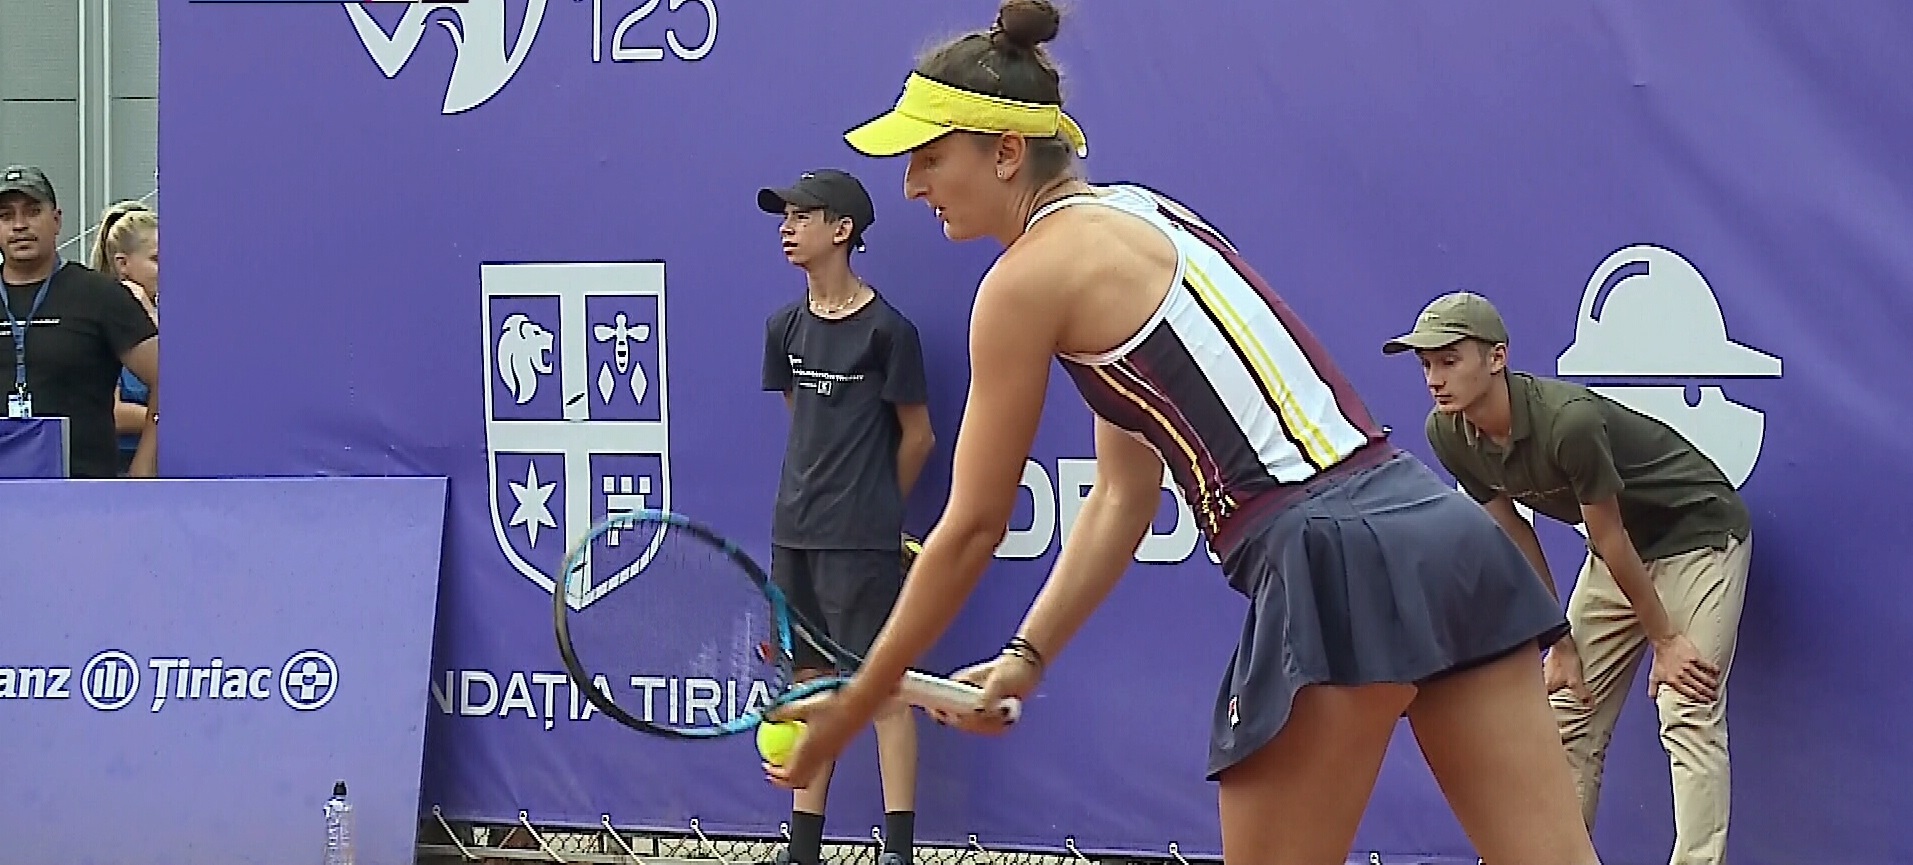 Țiriac Foundation Trophy | Irina Begu - Kateryna Baindl 6-1, 6-1. Românca s-a calificat în semifinalele turneului de la București